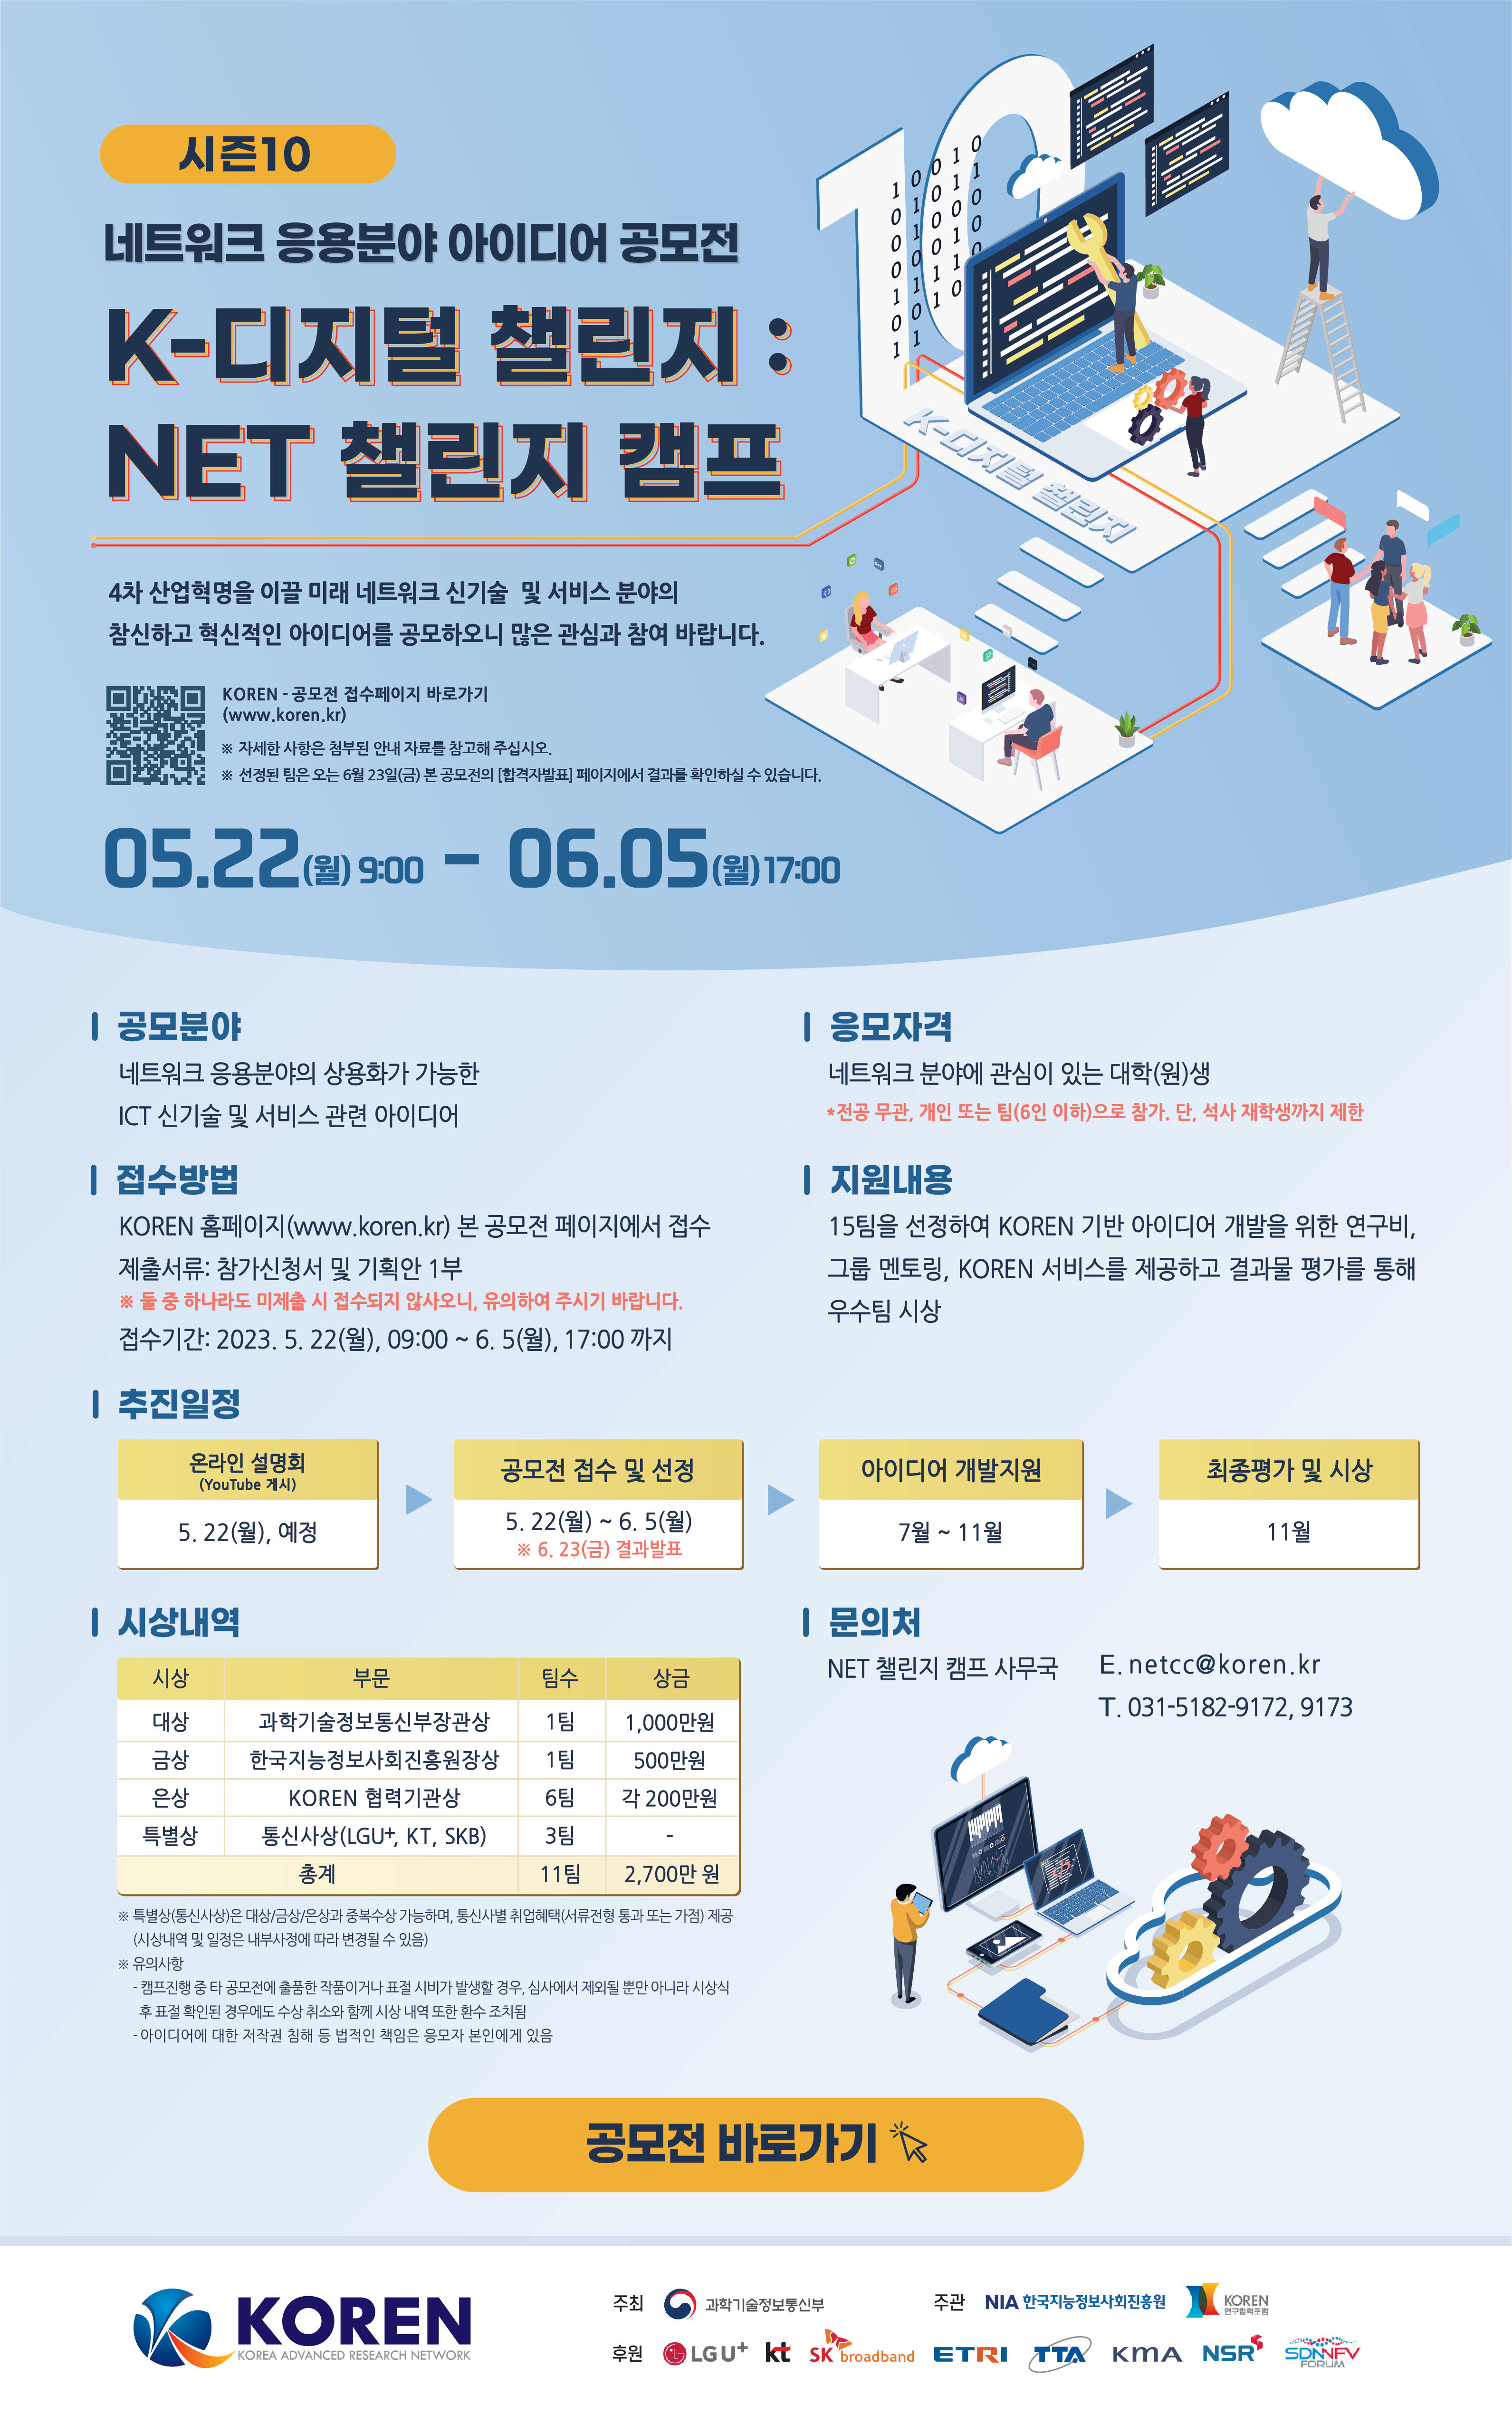 [KOREN] K-디지털 챌린지: NET 챌린지 캠프 아이디어 공모전 개최 첨부 이미지